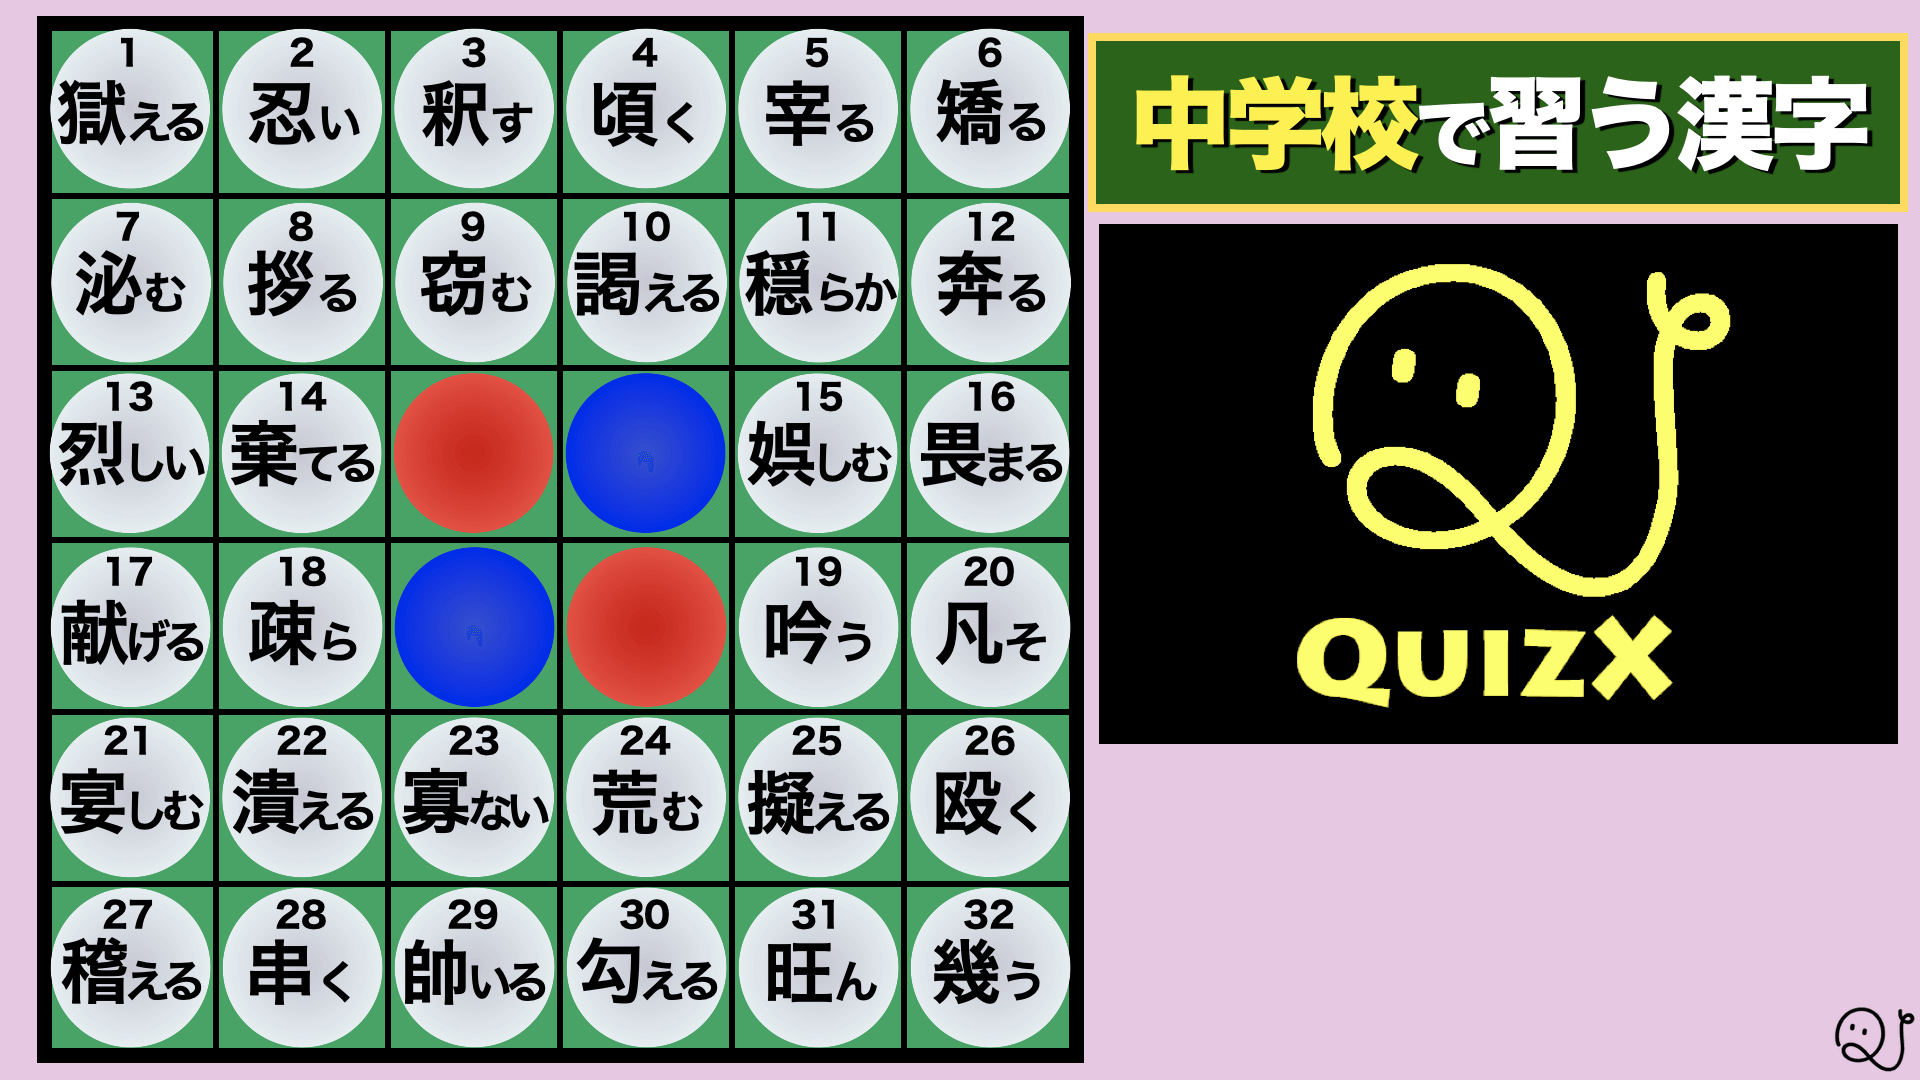 東大王 難問オセロ風 中学生で習う漢字 Quizx